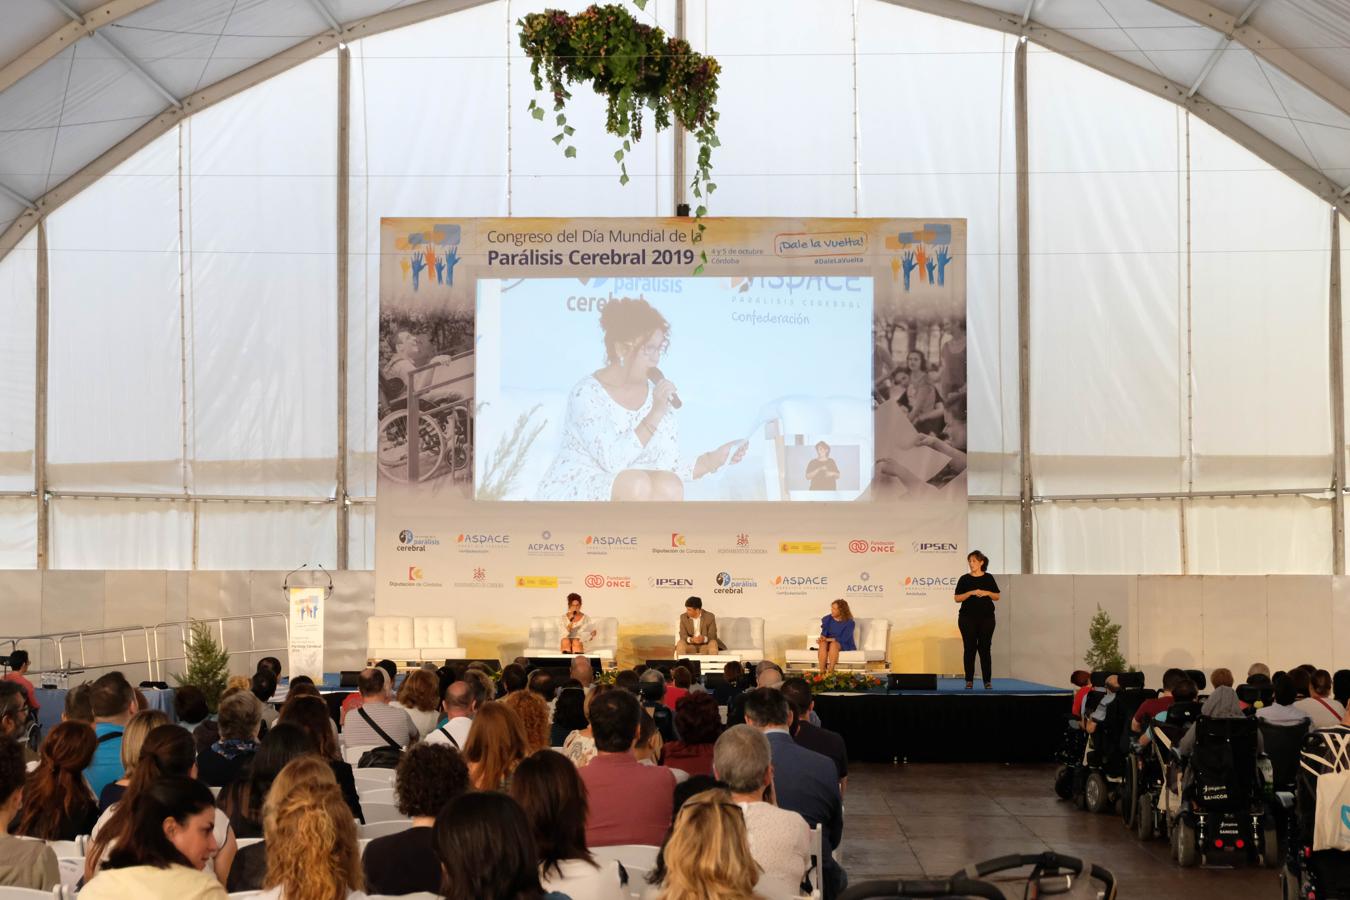 El Congreso del Día Mundial de la Parálisis Cerebral en Córdoba, en imágenes